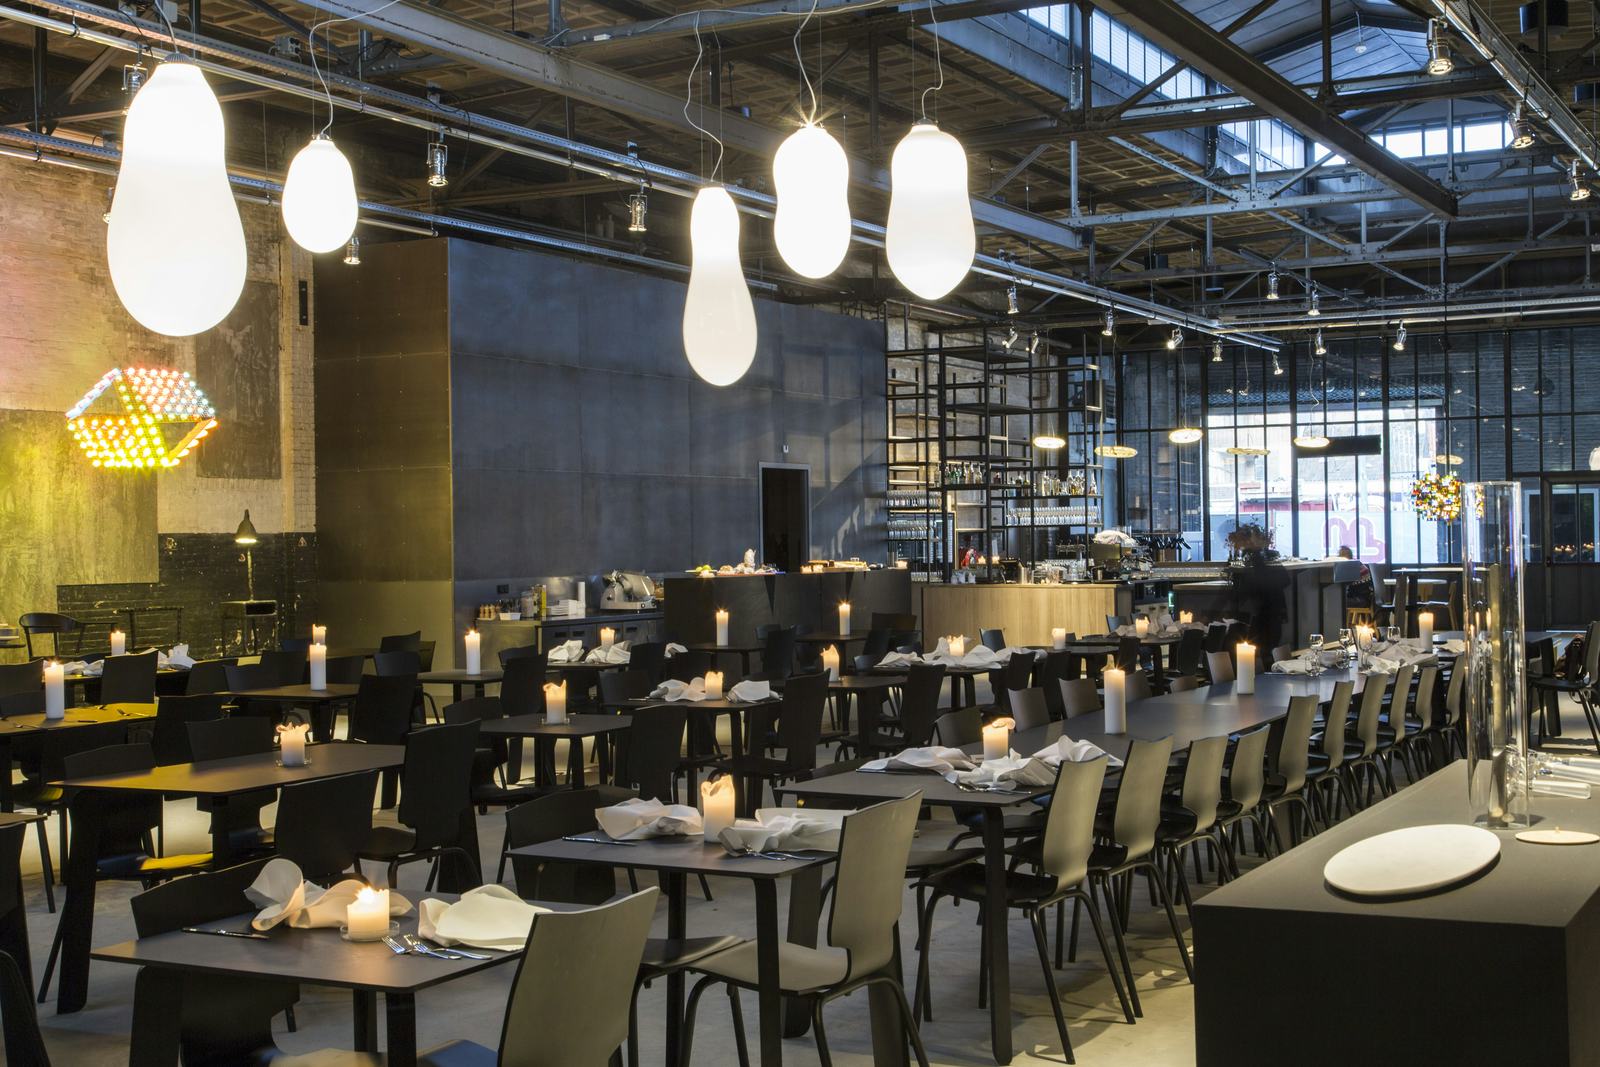 Ambitieus restaurant en luxehotel Kazerne in Eindhoven te koop: 'Intensieve gesprekken'